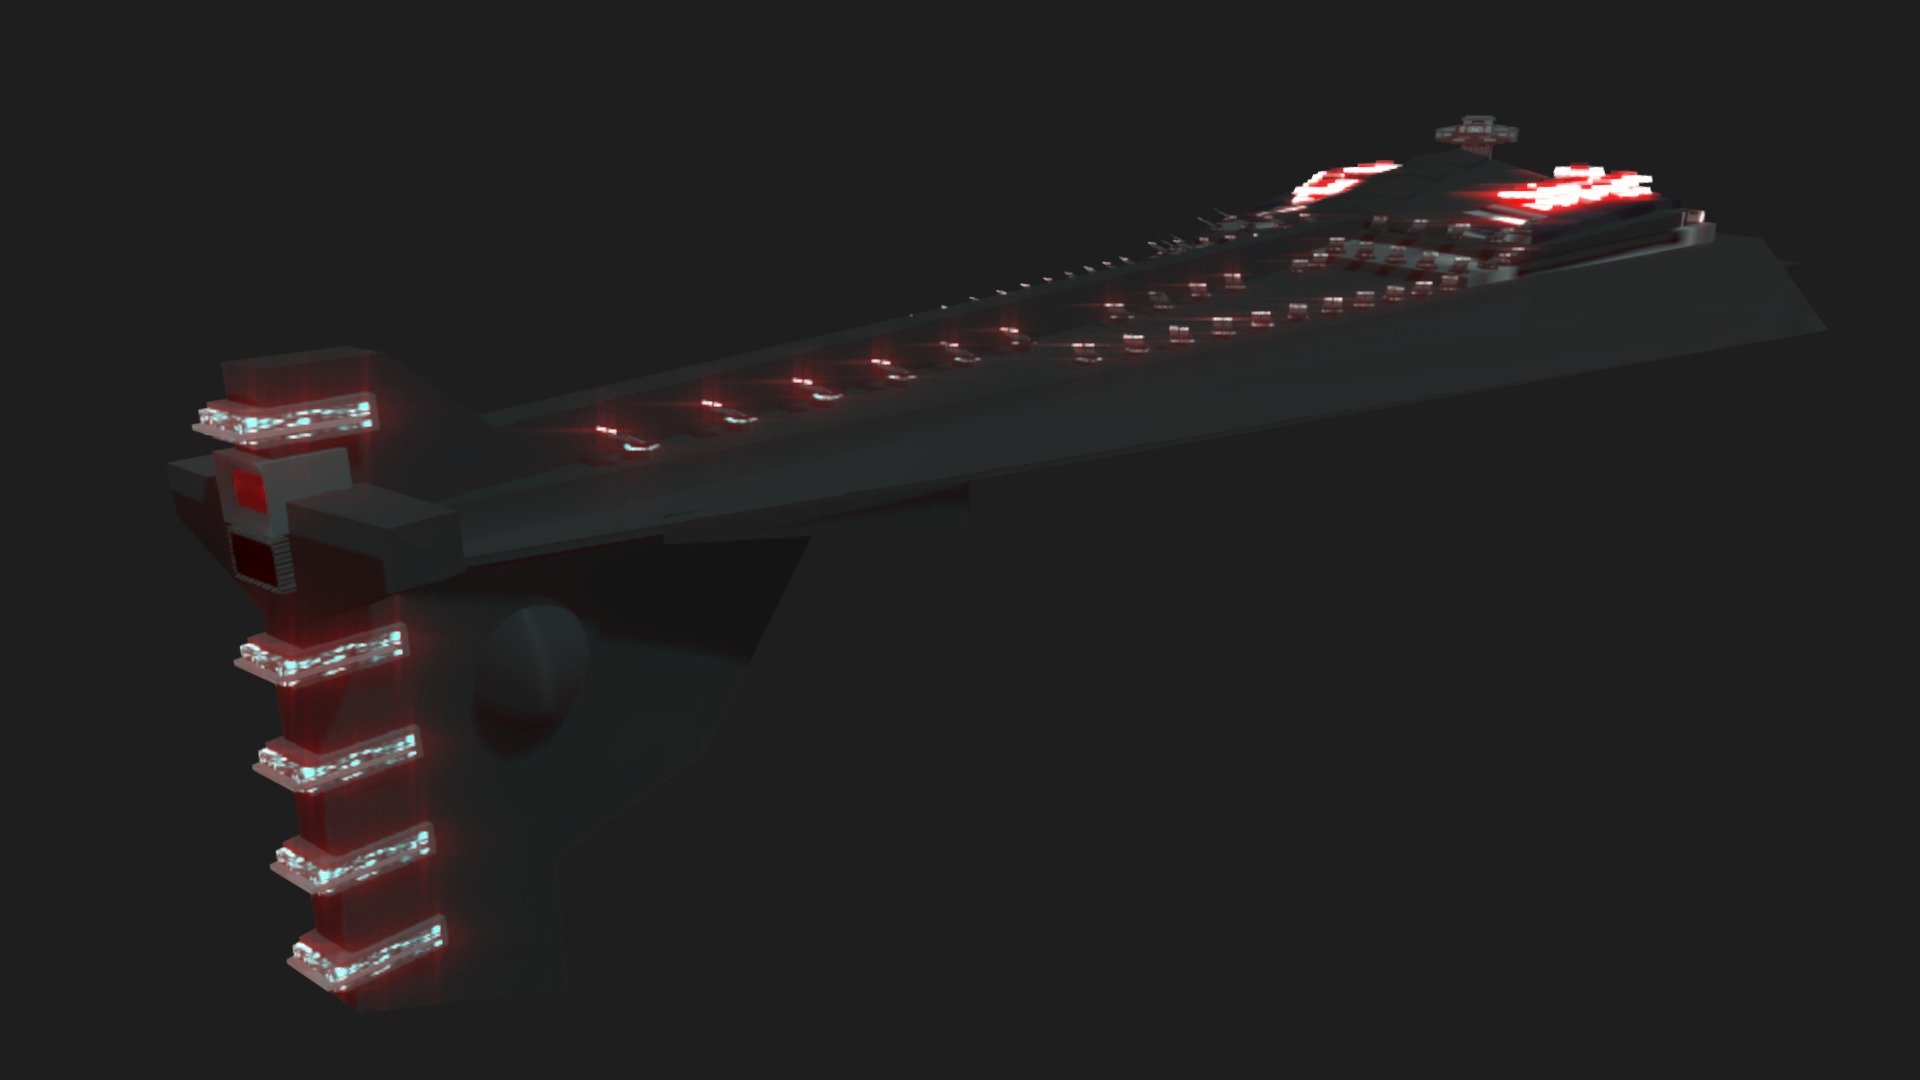 Eclipse II Star Dreadnought (SB Ship Editor) - 3D model by InterdictorSD  (@InterdictorSD) [7f1f0dc]